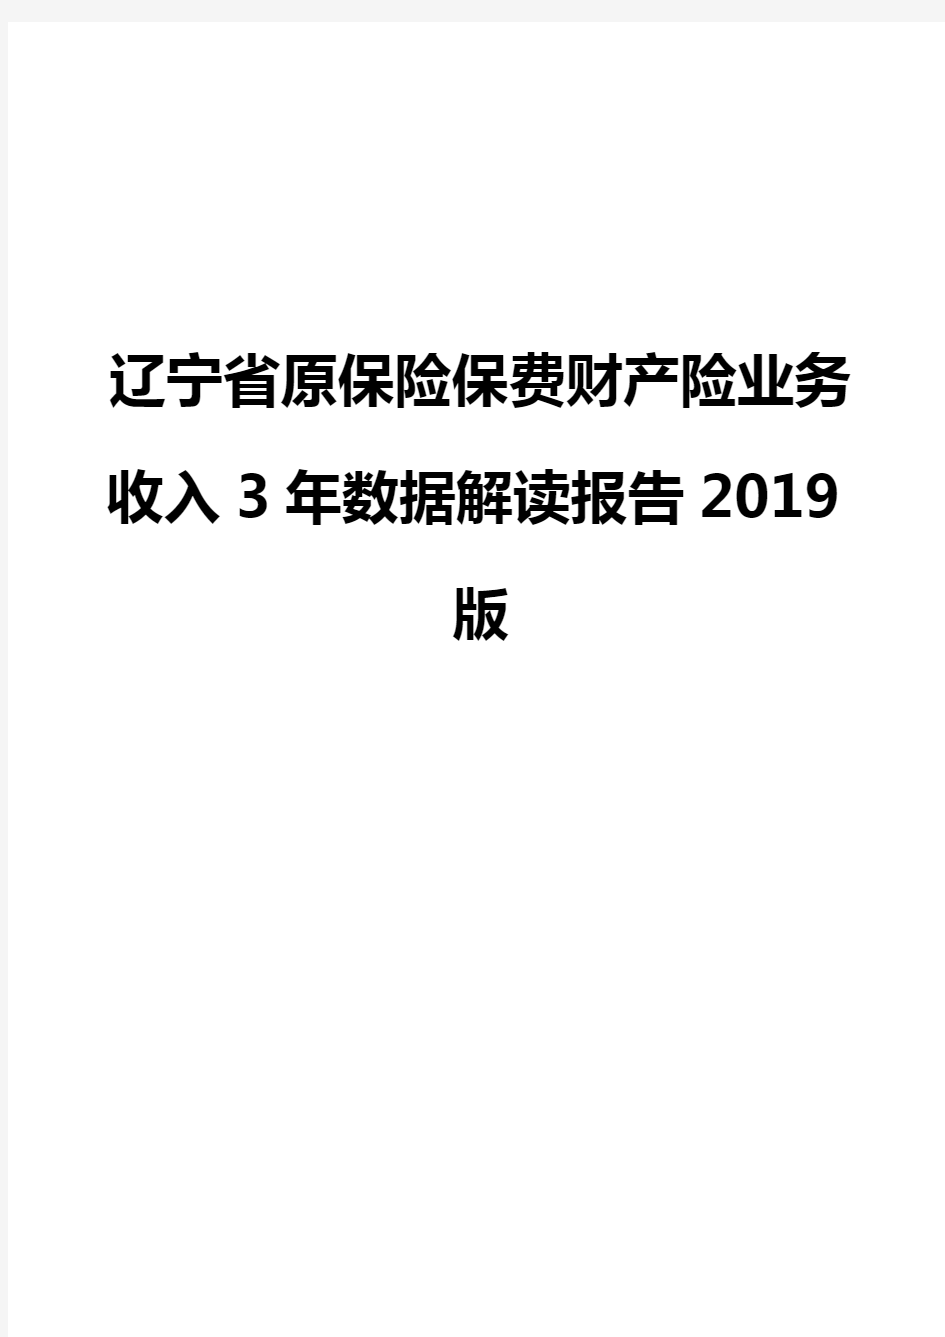 辽宁省原保险保费财产险业务收入3年数据解读报告2019版